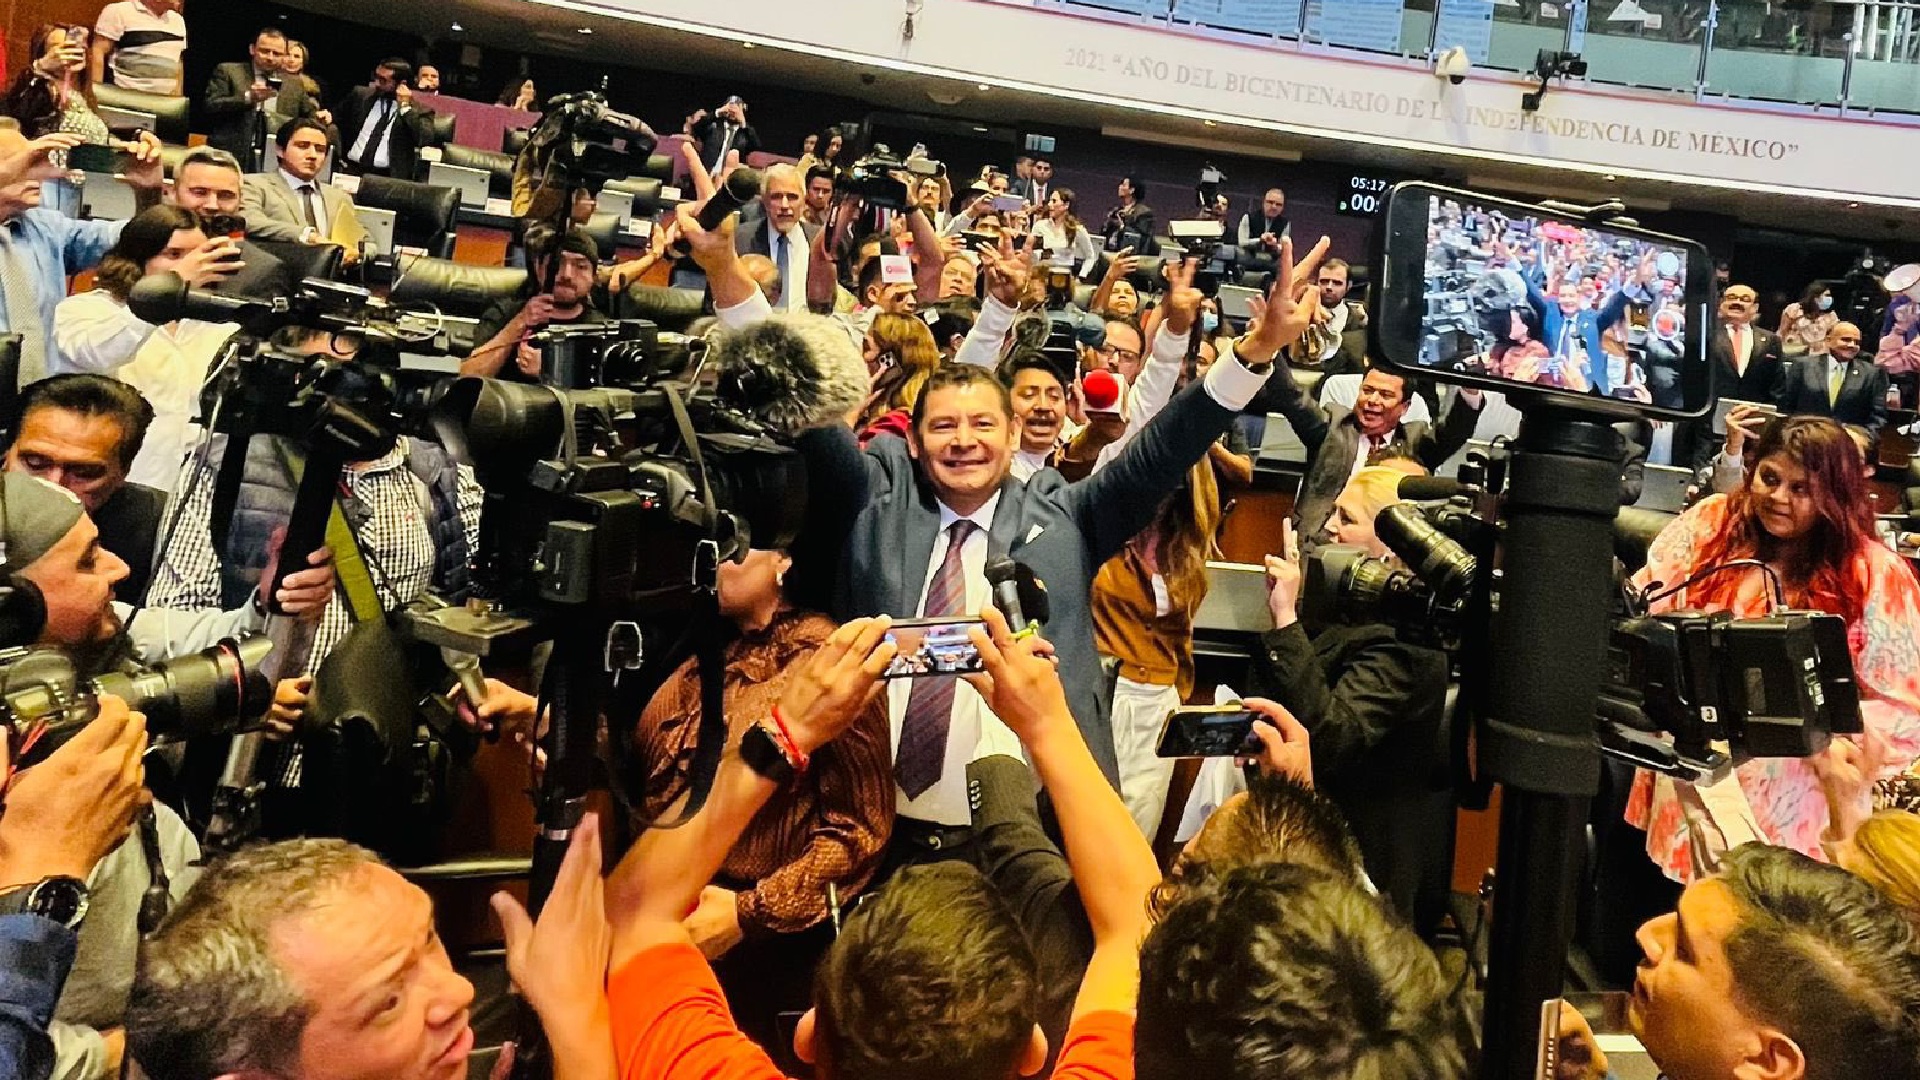 El presidente del Senado, alejandro Armenta festejó el triunfo de su partido al sacar adelante la agenda de la 4T. (Foto: Twitter/Alberto_Rubio)